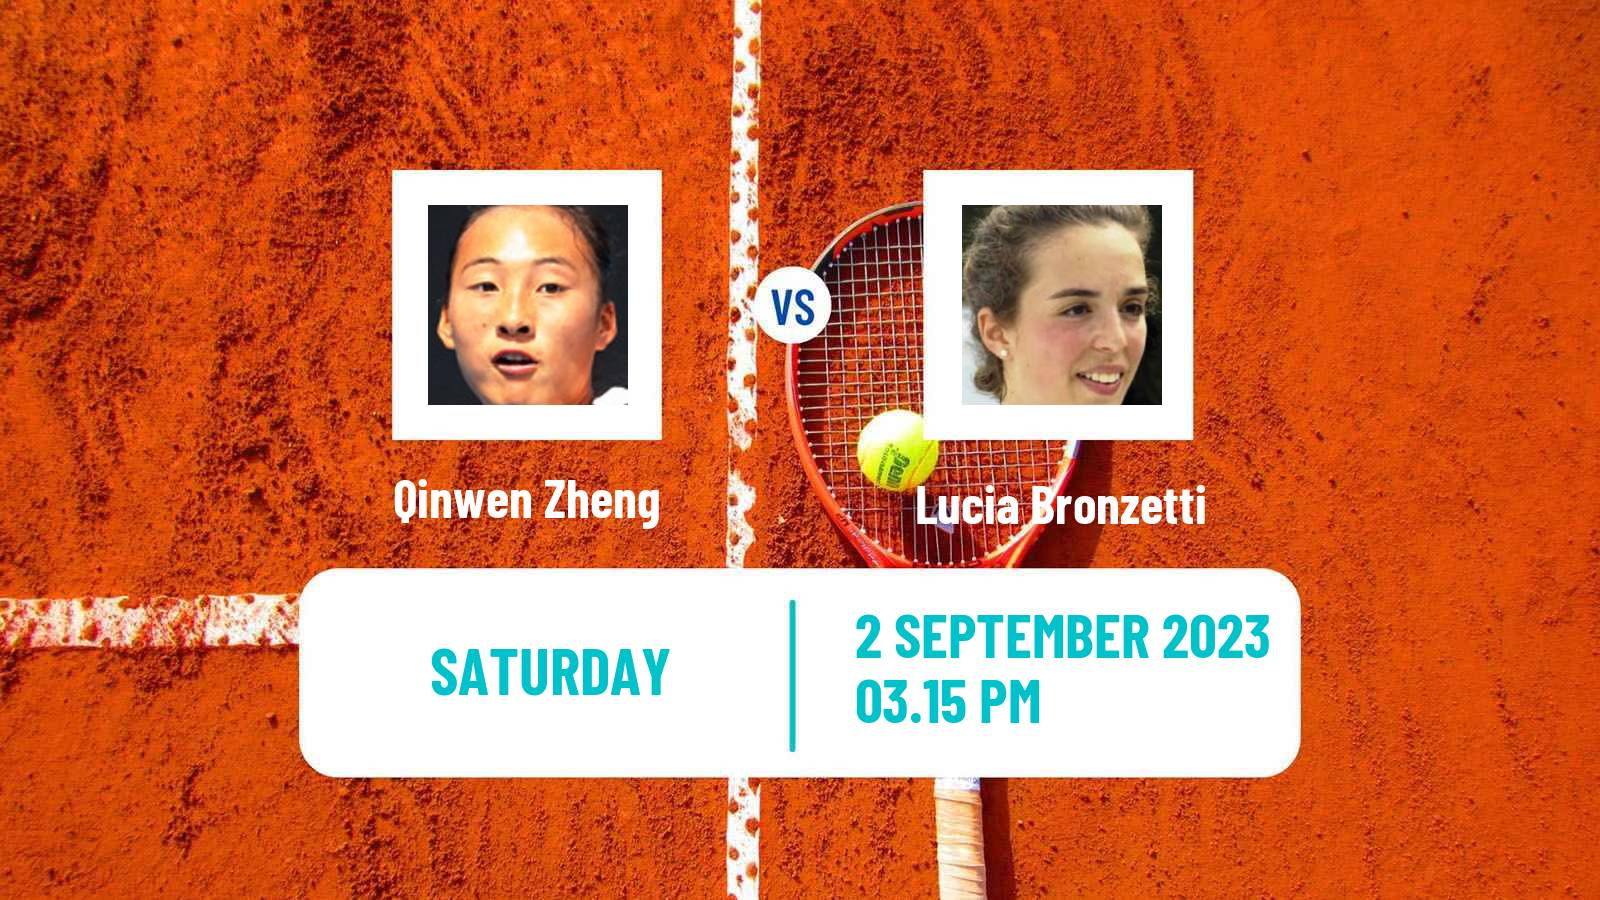 Tennis WTA US Open Qinwen Zheng - Lucia Bronzetti